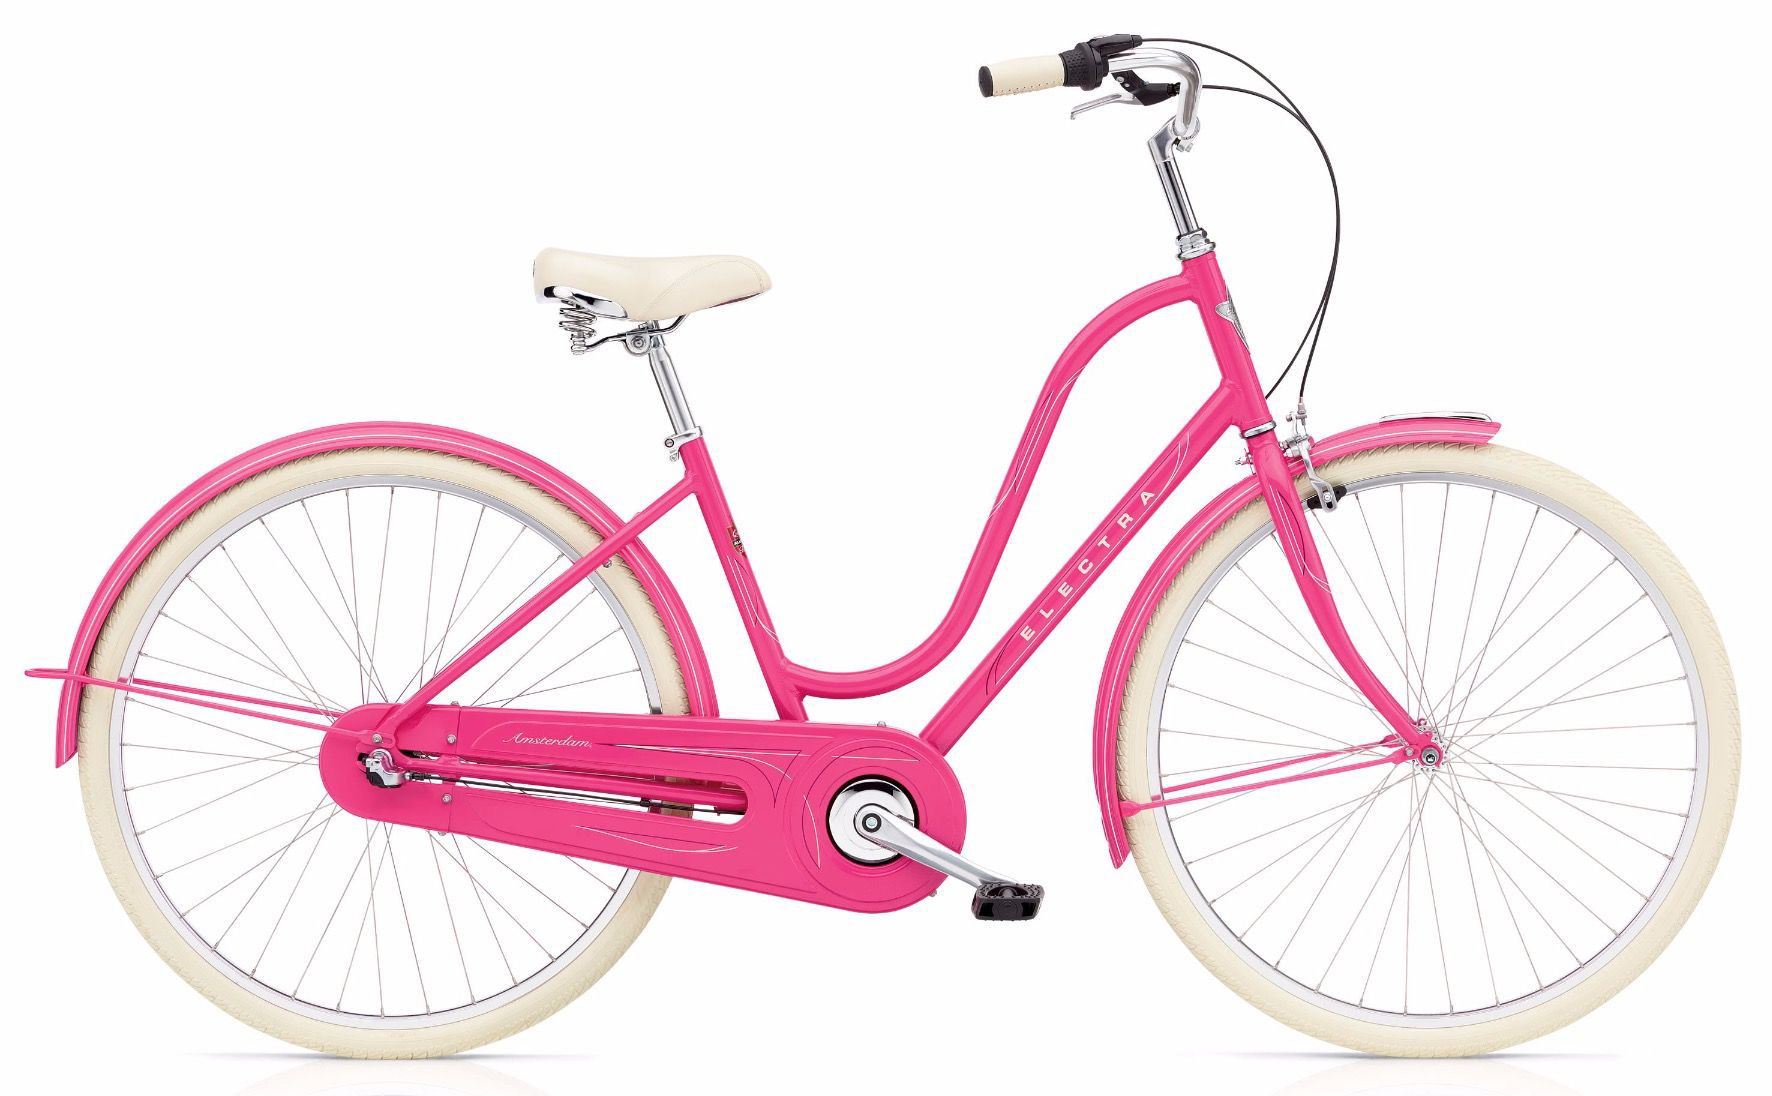  Отзывы о Женском велосипеде Electra Amsterdam Original 3i ladies 2019